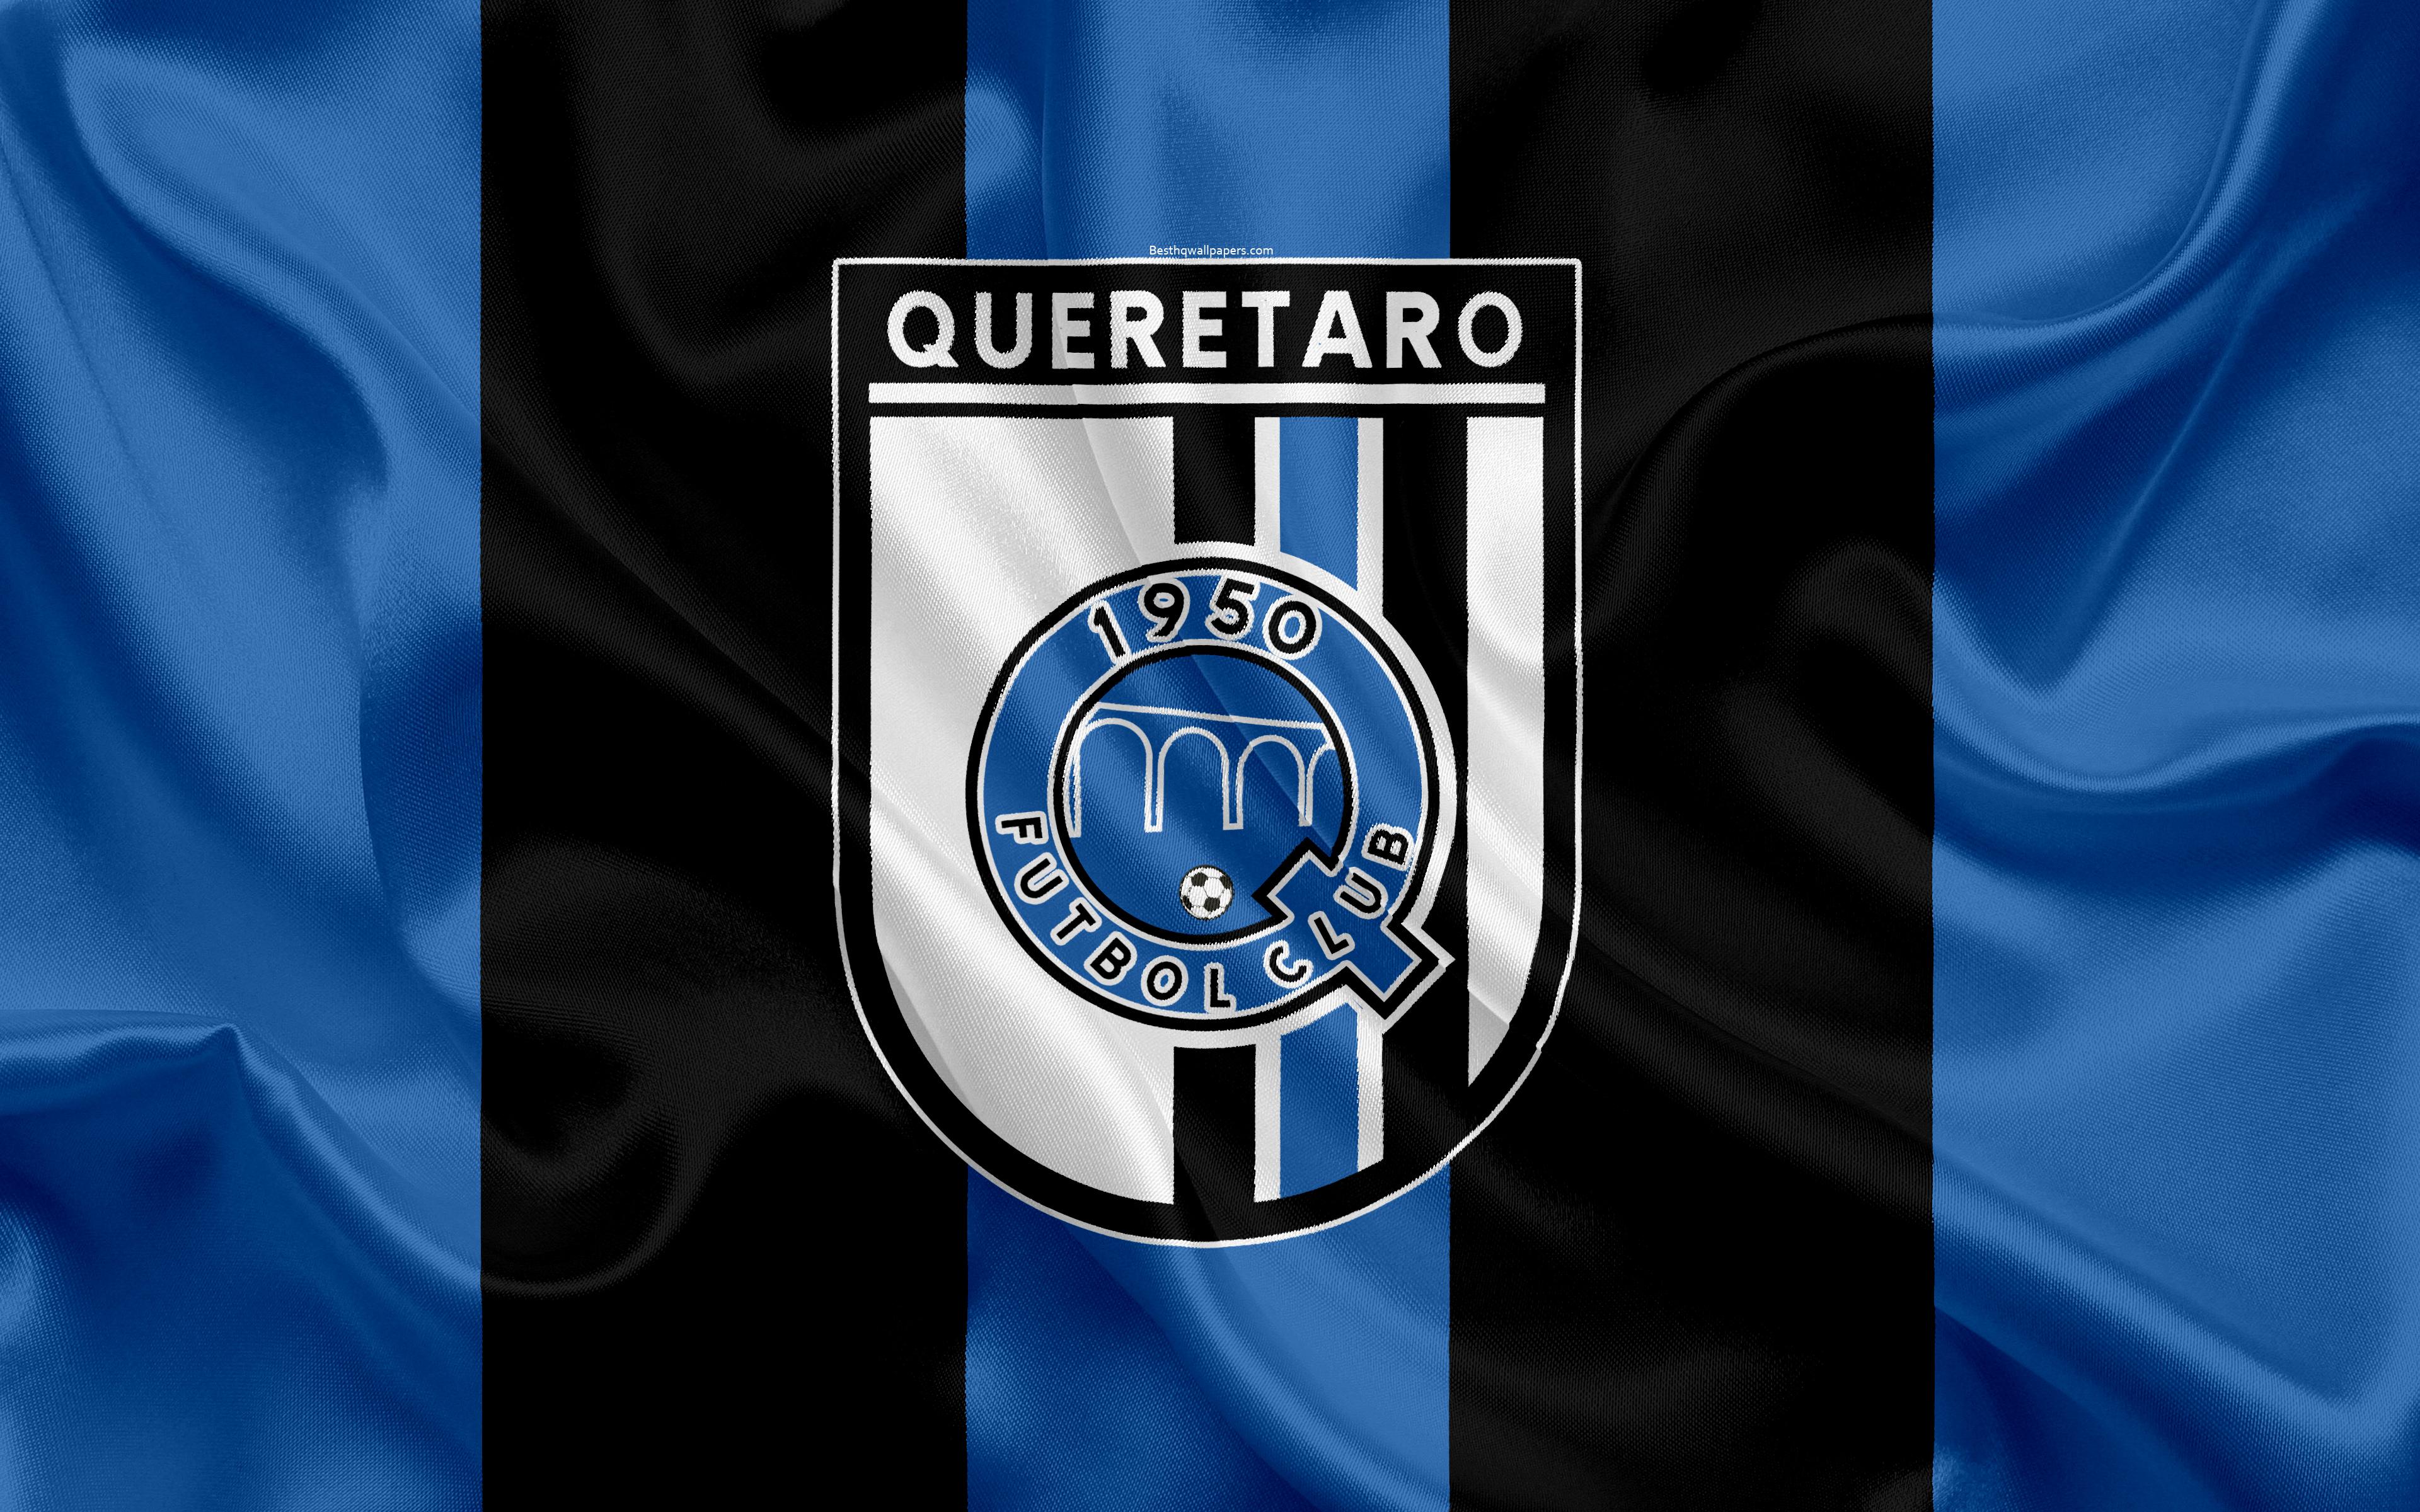 Download wallpaper Queretaro FC, 4k, Mexican football club, emblem